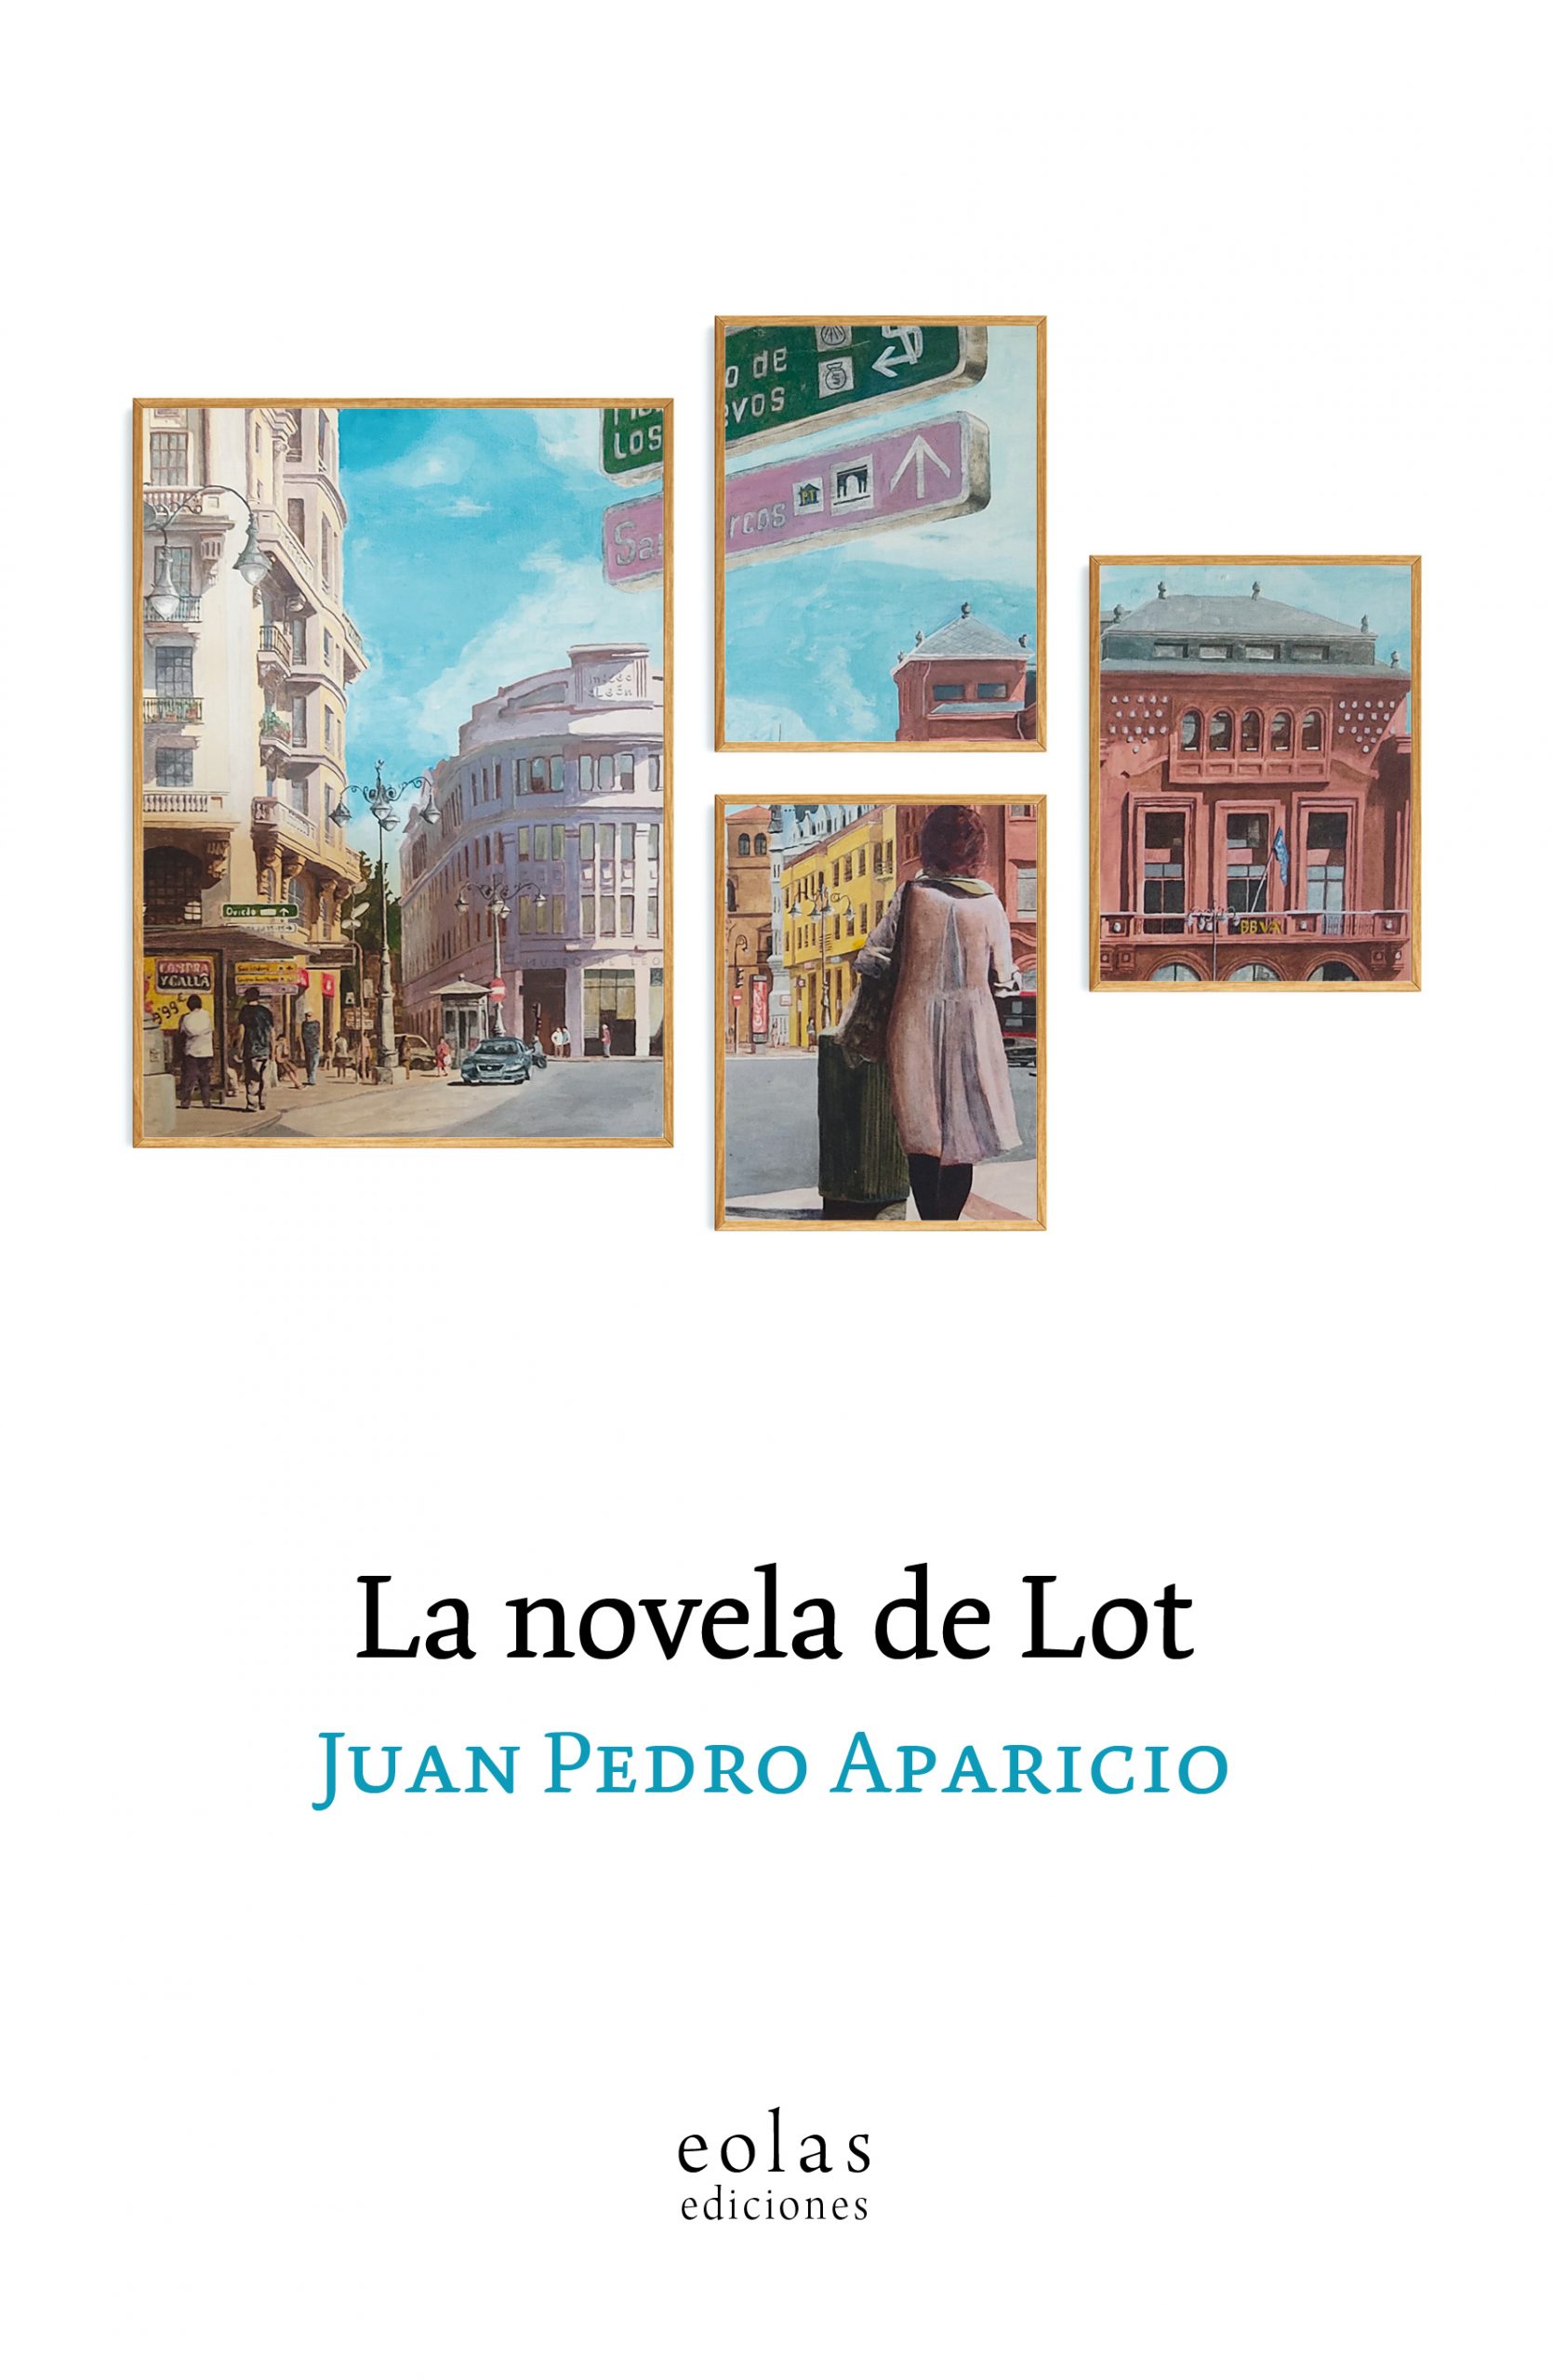 La novela de Lot, de Juan Pedro Aparicio